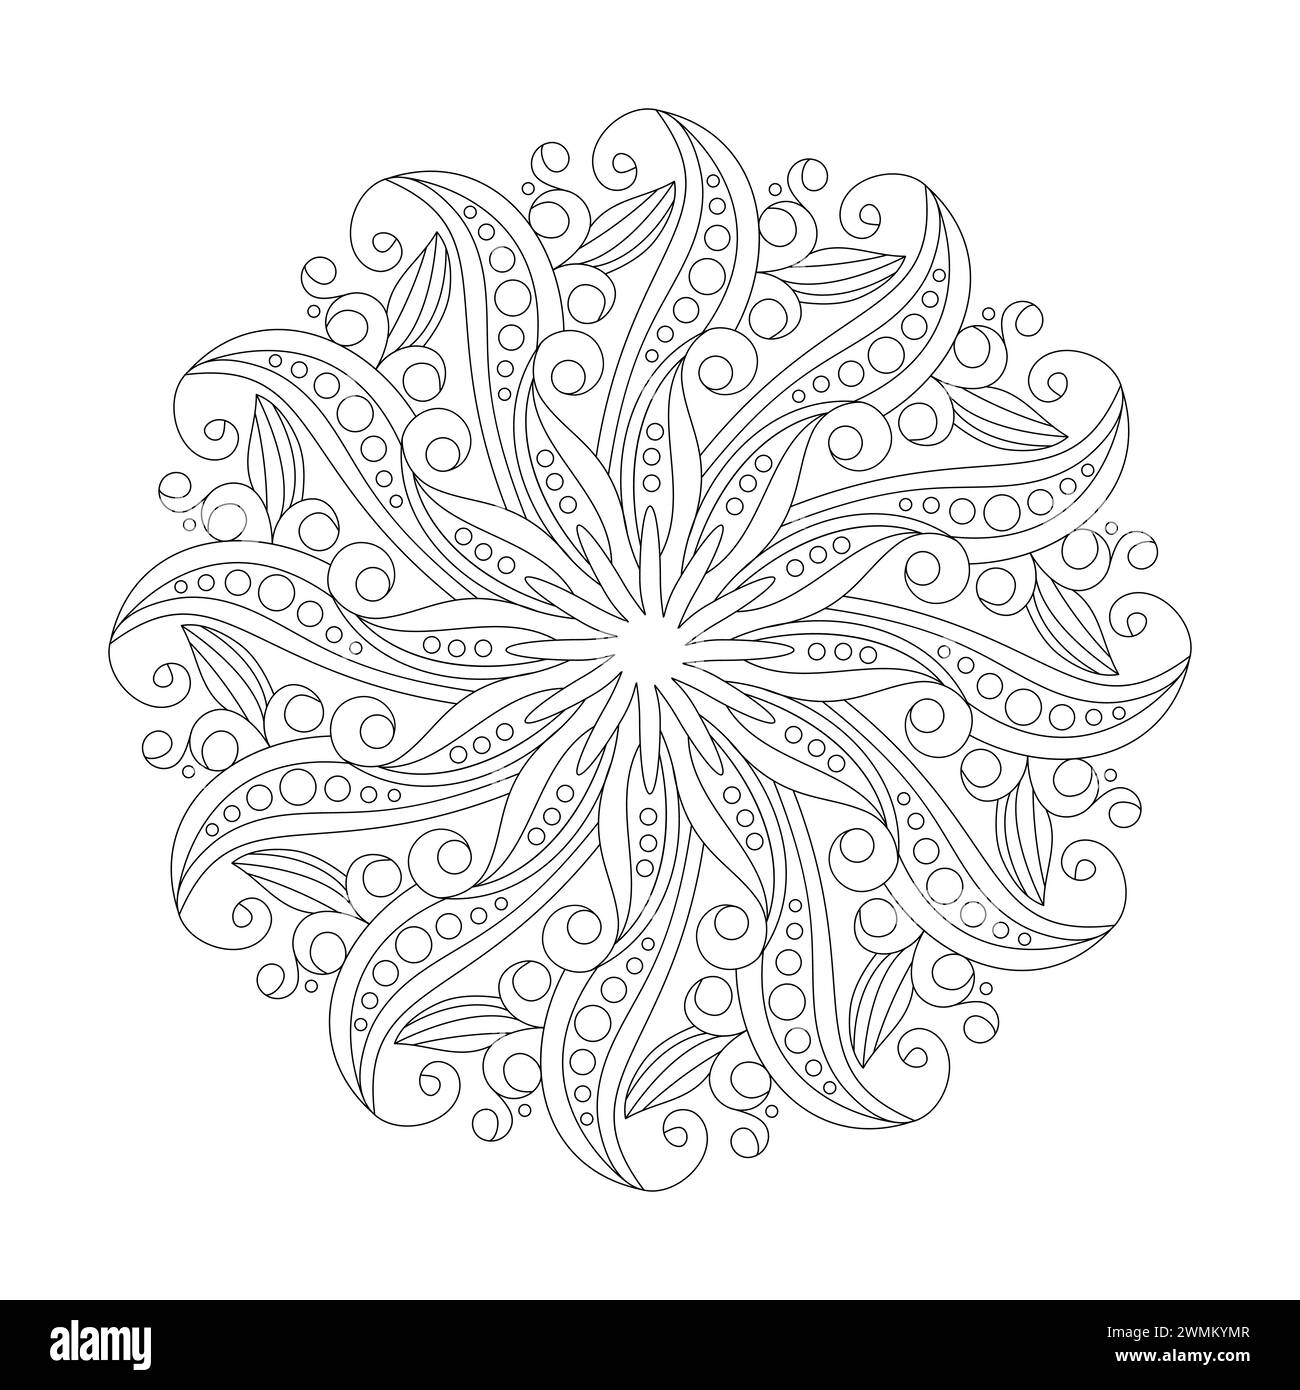 Pagina del libro da colorare Mandala Cosmic Floral Elegance per l'interno del libro kdp. Petali tranquilli, capacità di rilassarsi, esperienze cerebrali, Harmonous Haven, Pace Illustrazione Vettoriale